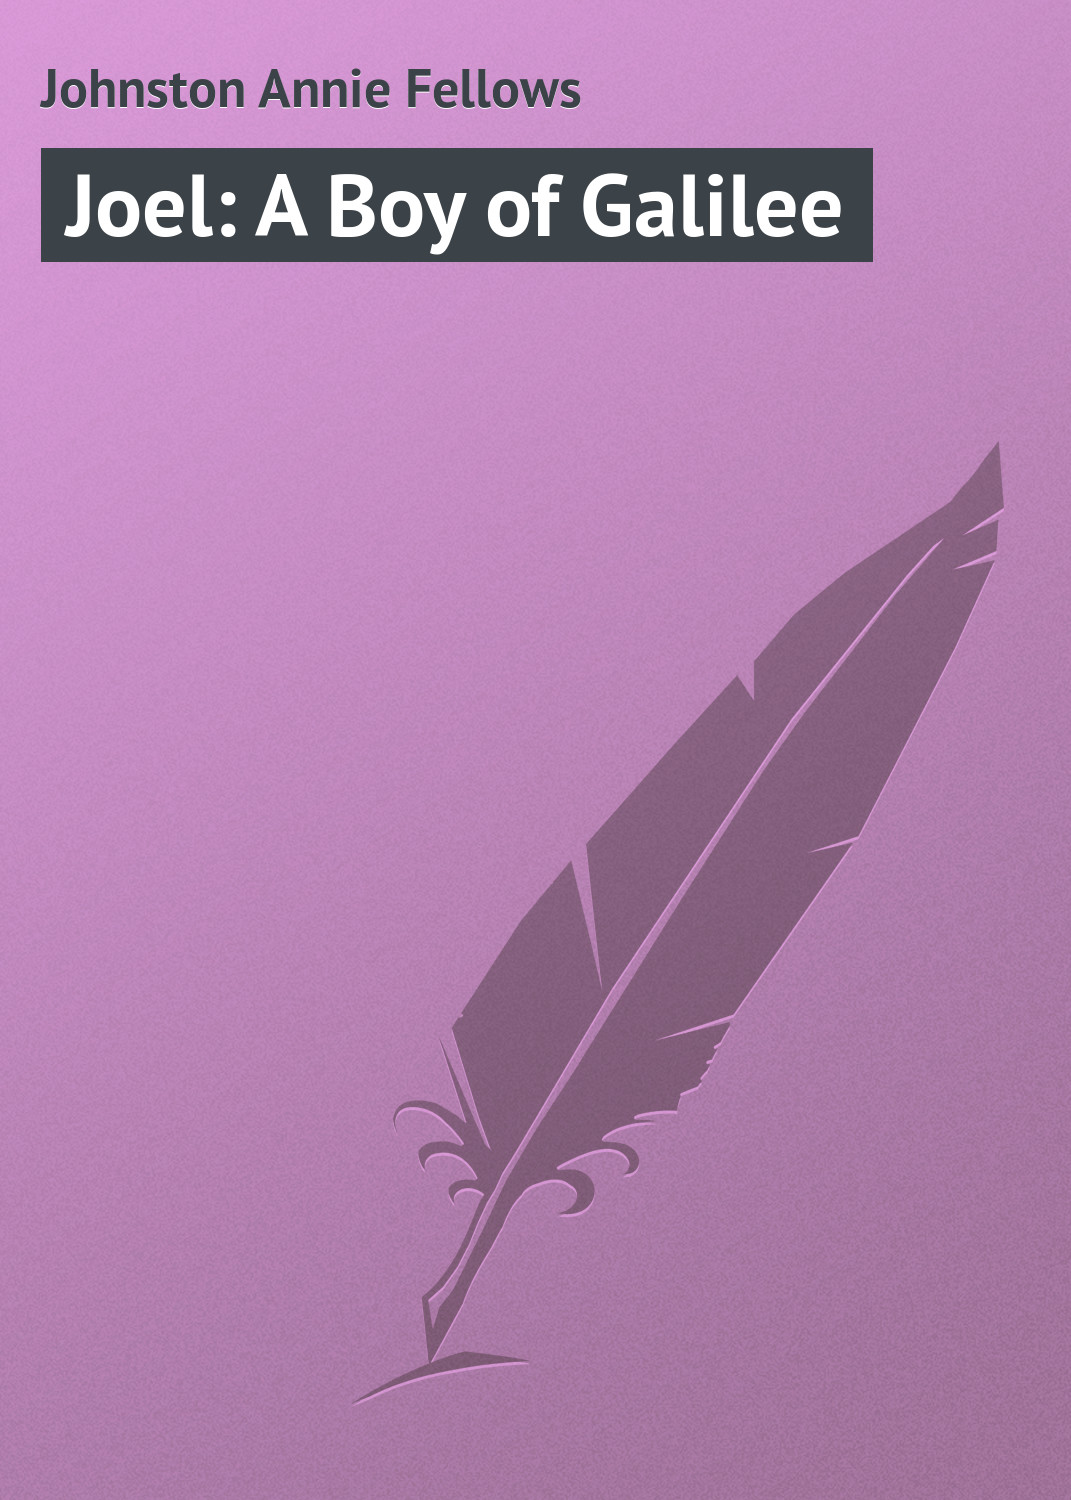 Книга Joel: A Boy of Galilee из серии , созданная Annie Johnston, может относится к жанру Зарубежная классика, Зарубежные детские книги. Стоимость электронной книги Joel: A Boy of Galilee с идентификатором 23149387 составляет 5.99 руб.